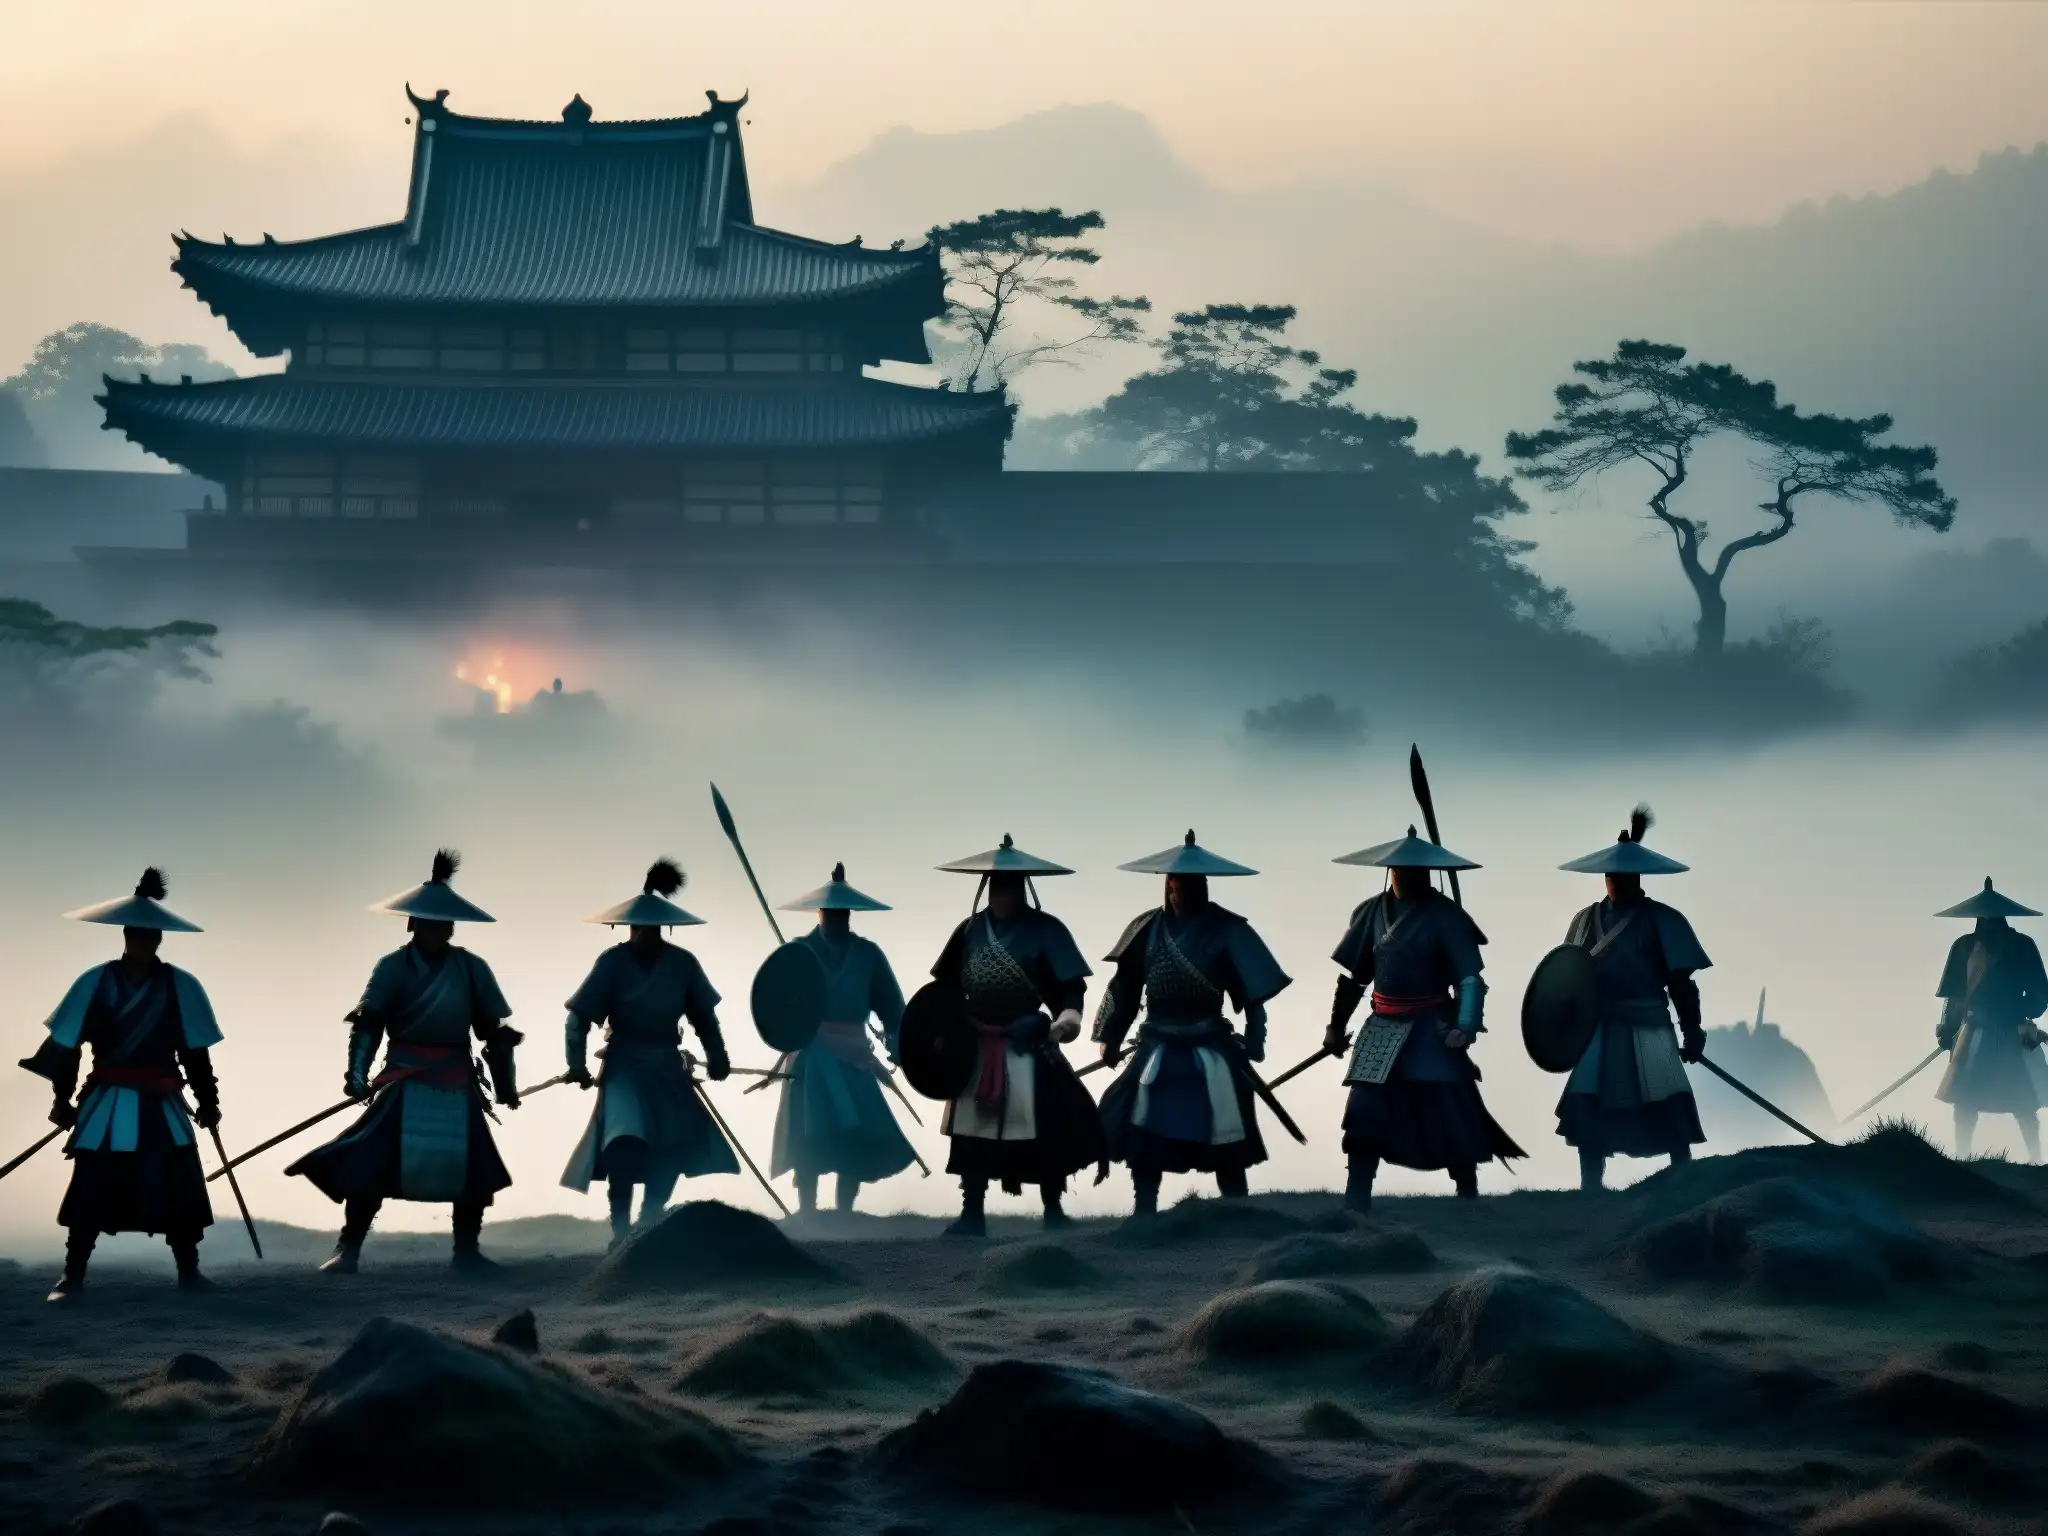 Imagen de apariciones samuráis fantasma en la neblina de antiguas batallas al anochecer, evocando misterio y leyendas